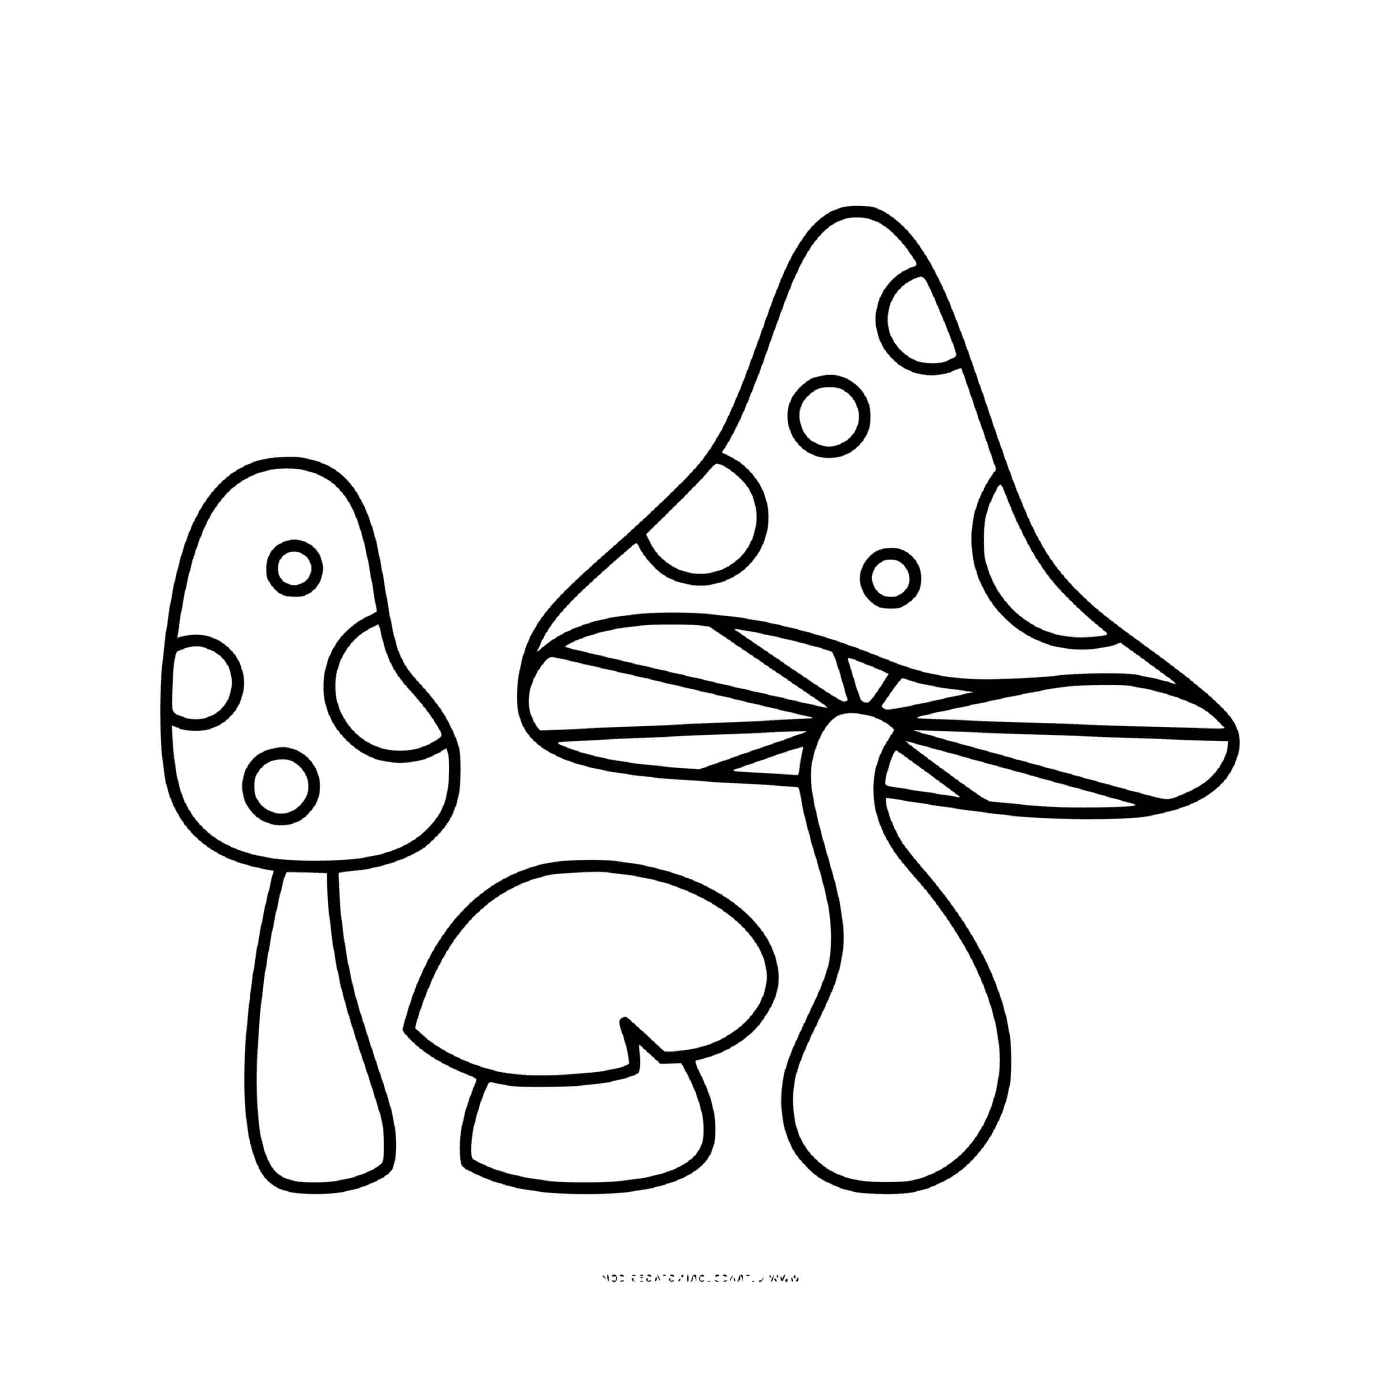  Различные аманитные грибы daffodil и фаллоид 